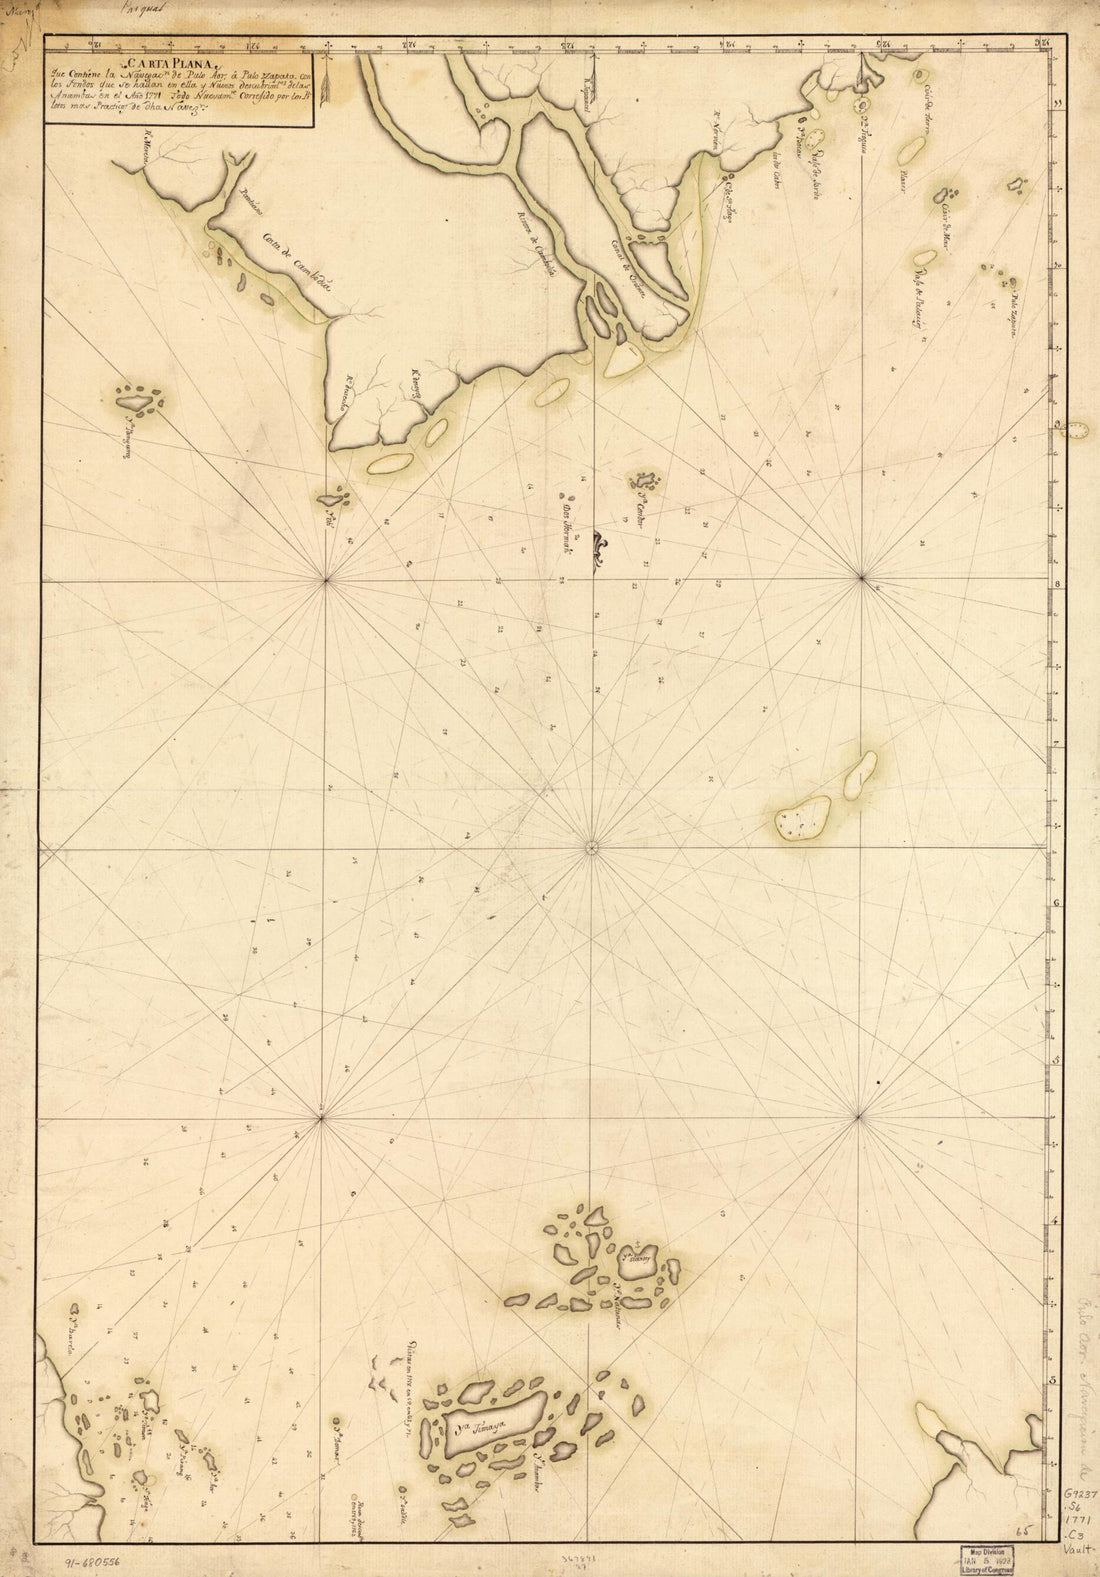 This old map of Carta Plana Que Contiene La Navegacn. De Pulo Aor a Pulo Zapata Con Los Fondos Que Se Hallan En Ella Y Nuevos Descubrimtos. De Las Anambas En El Año from 1771 was created by  in 1771